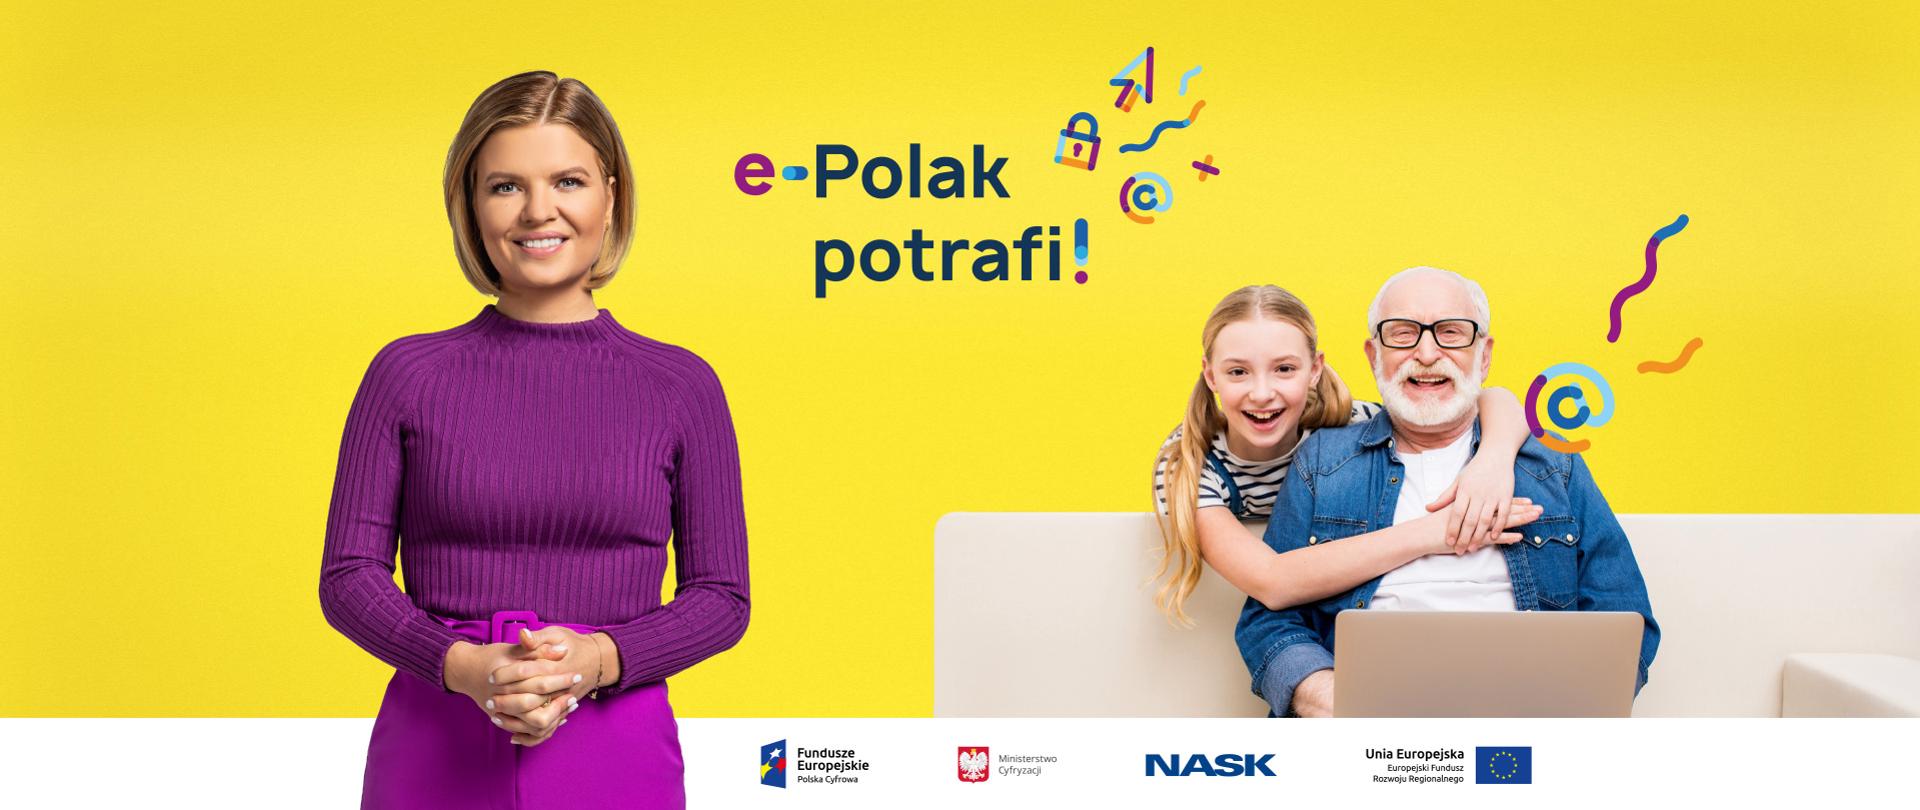 Po lewej stronie - Marta Manowska, po prawej - uśmiechnięci dziadek z wnuczką przy laptopie, na środku - na żółtym tle - logo kampanii "e-Polak potrafi!".